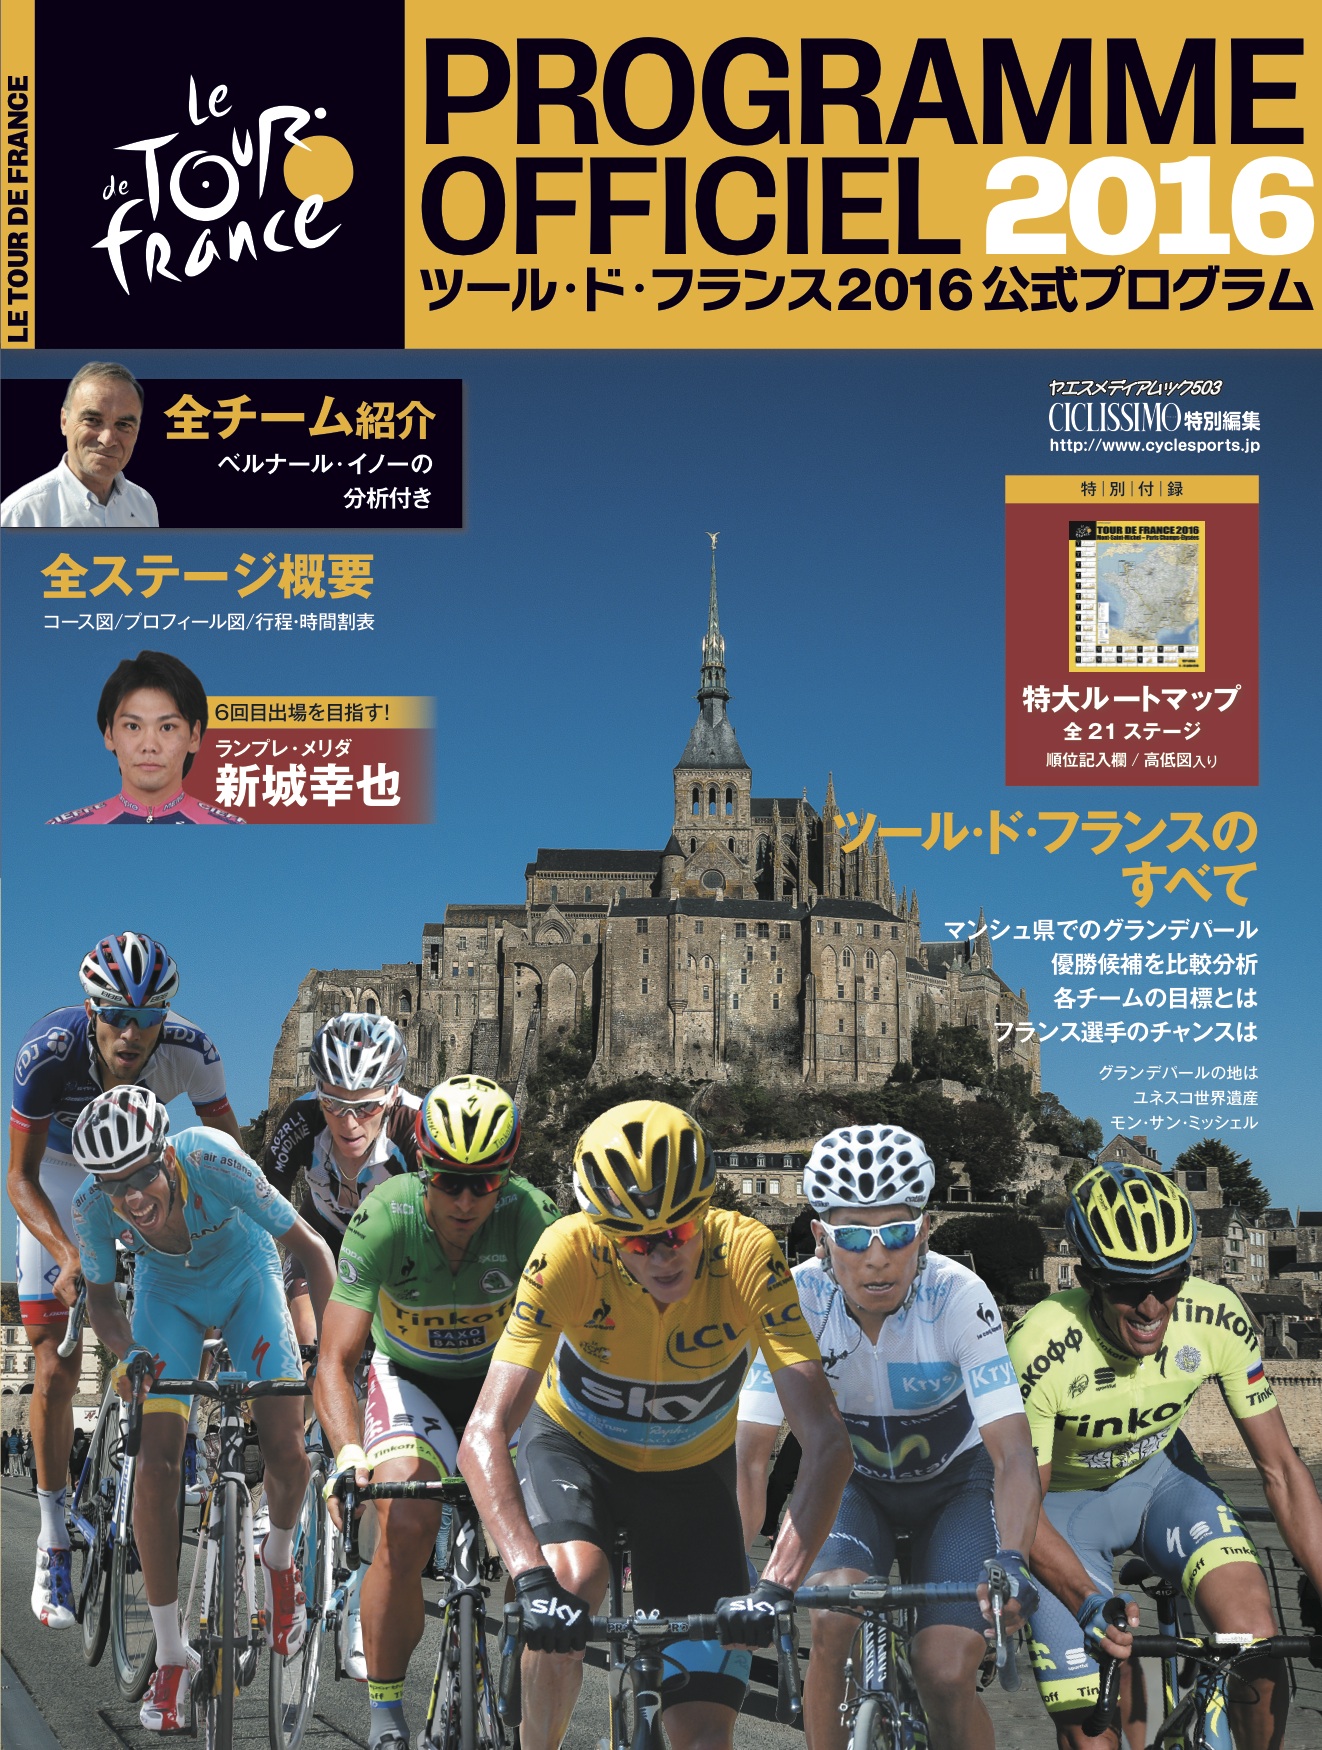 6 16発売 ツール ド フランス16公式プログラム サイクルスポーツのニュース サイクルスポーツ Jp